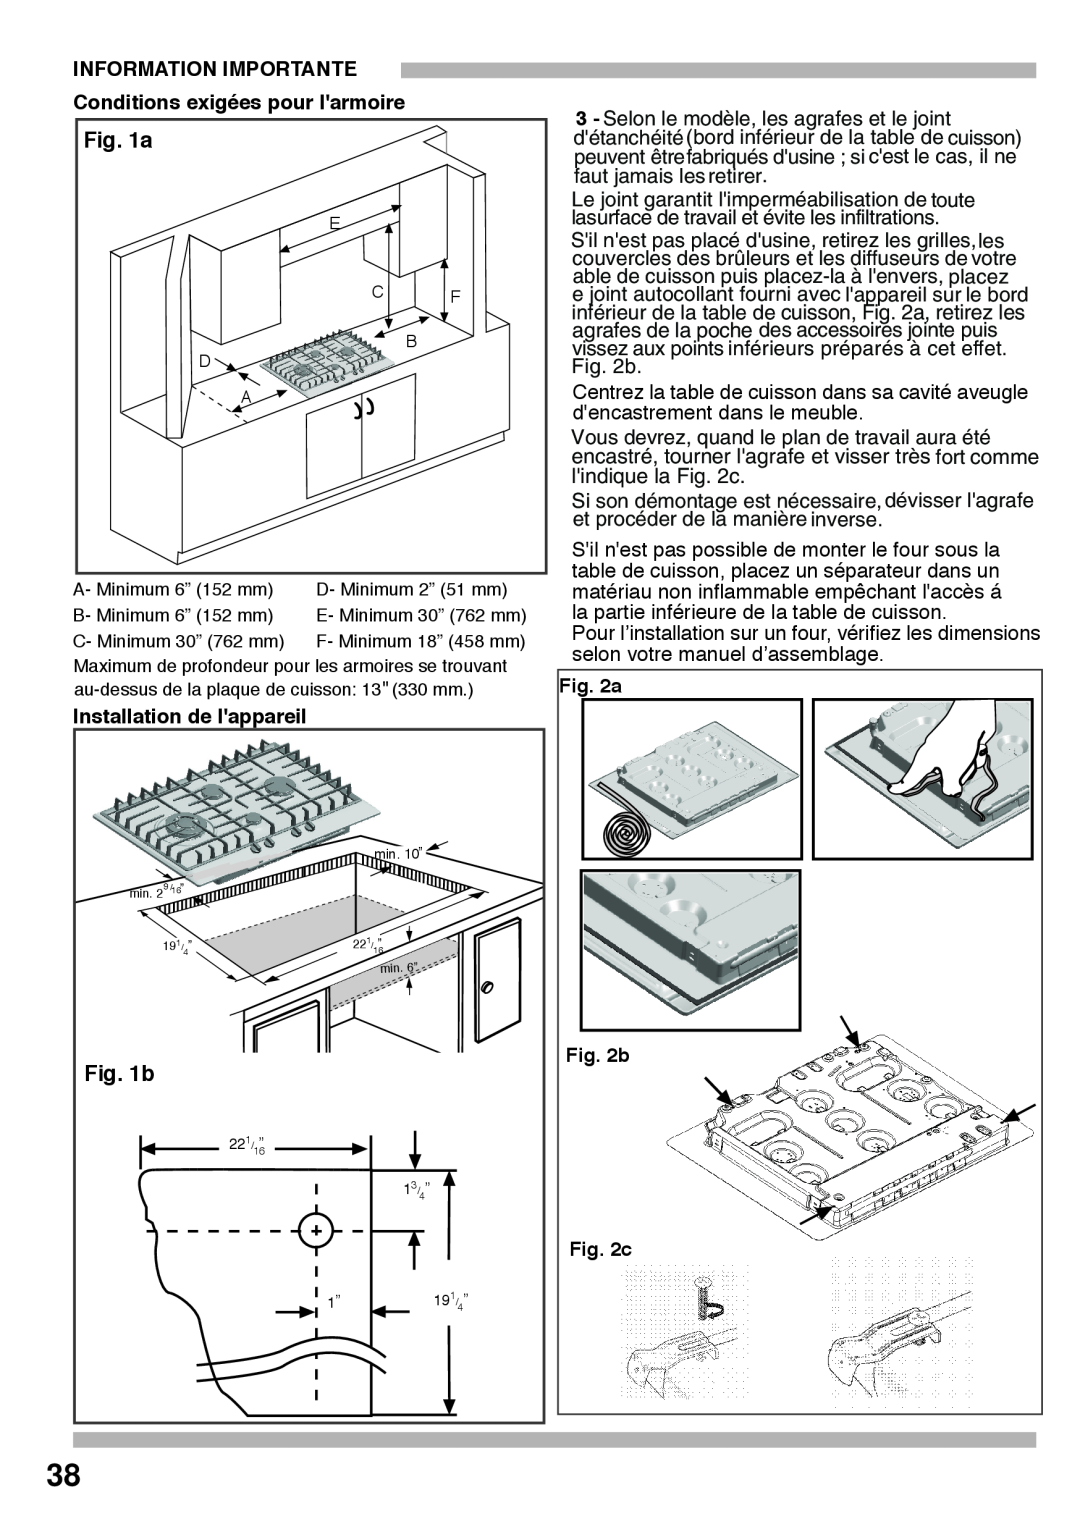 Bosch Appliances PCK755UC manual Information Importante, Conditions exigées pour larmoire, Installation de lappareil, b 